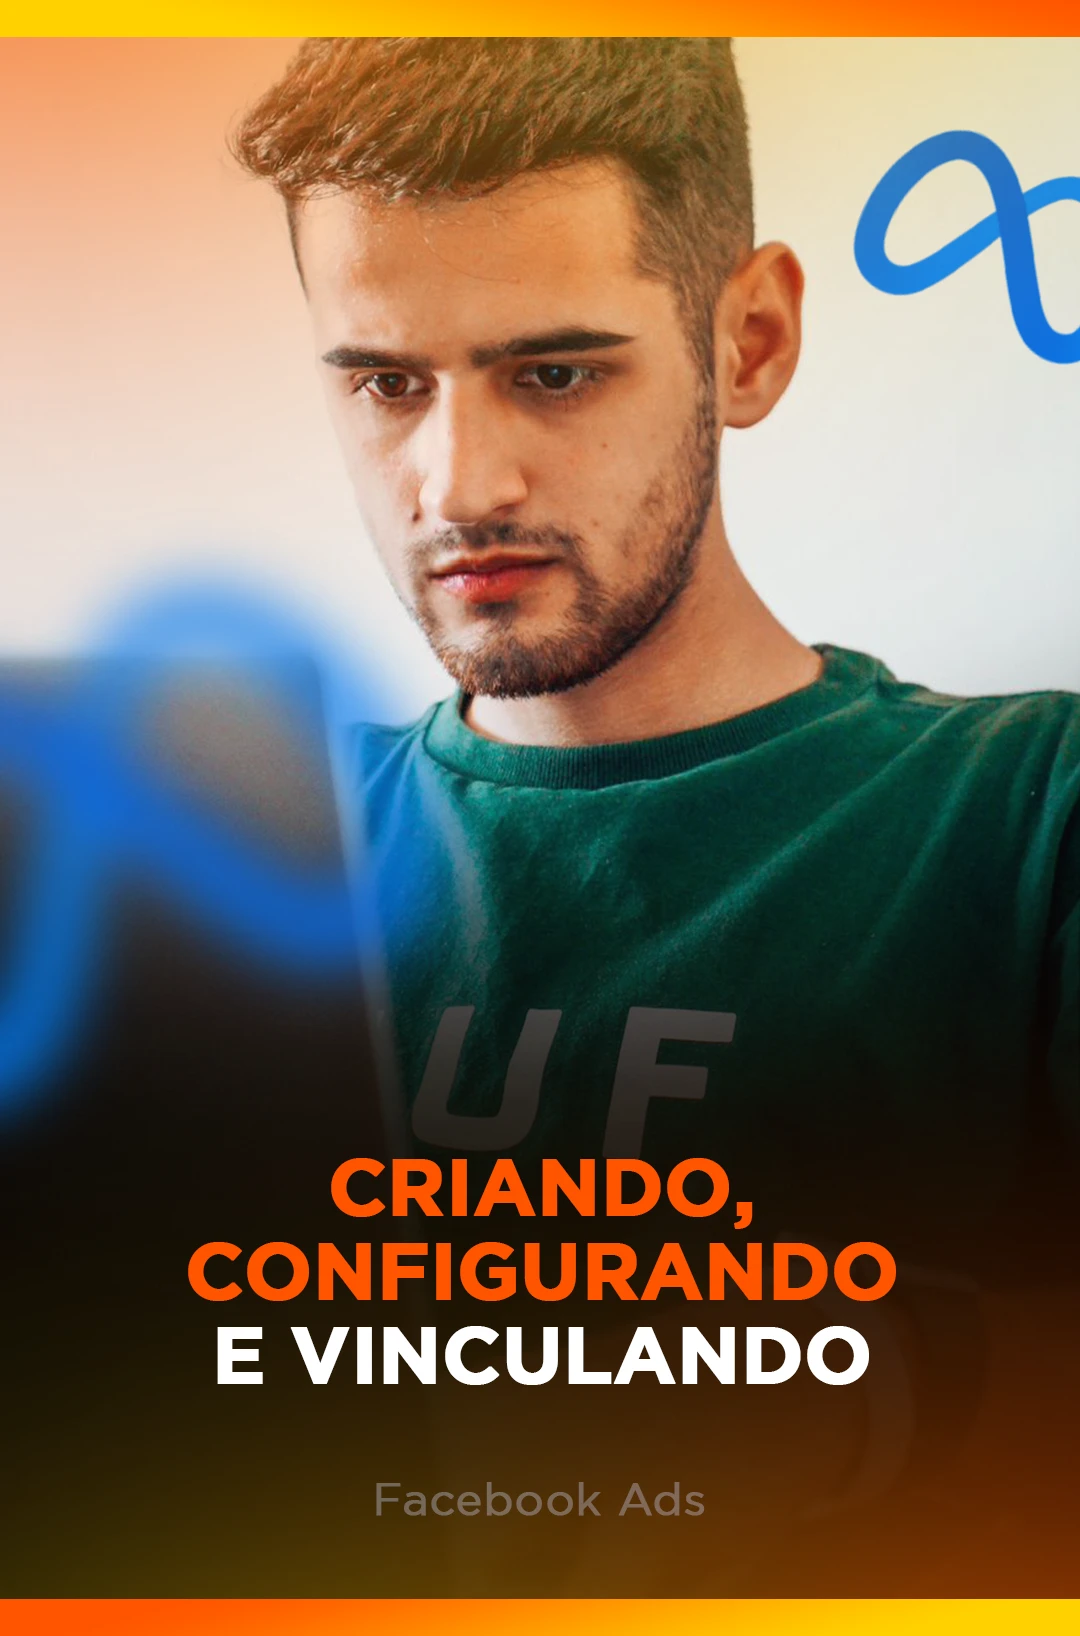 CRIANDO, CONFIGURANDO E VINCULANDO - FACE ADS